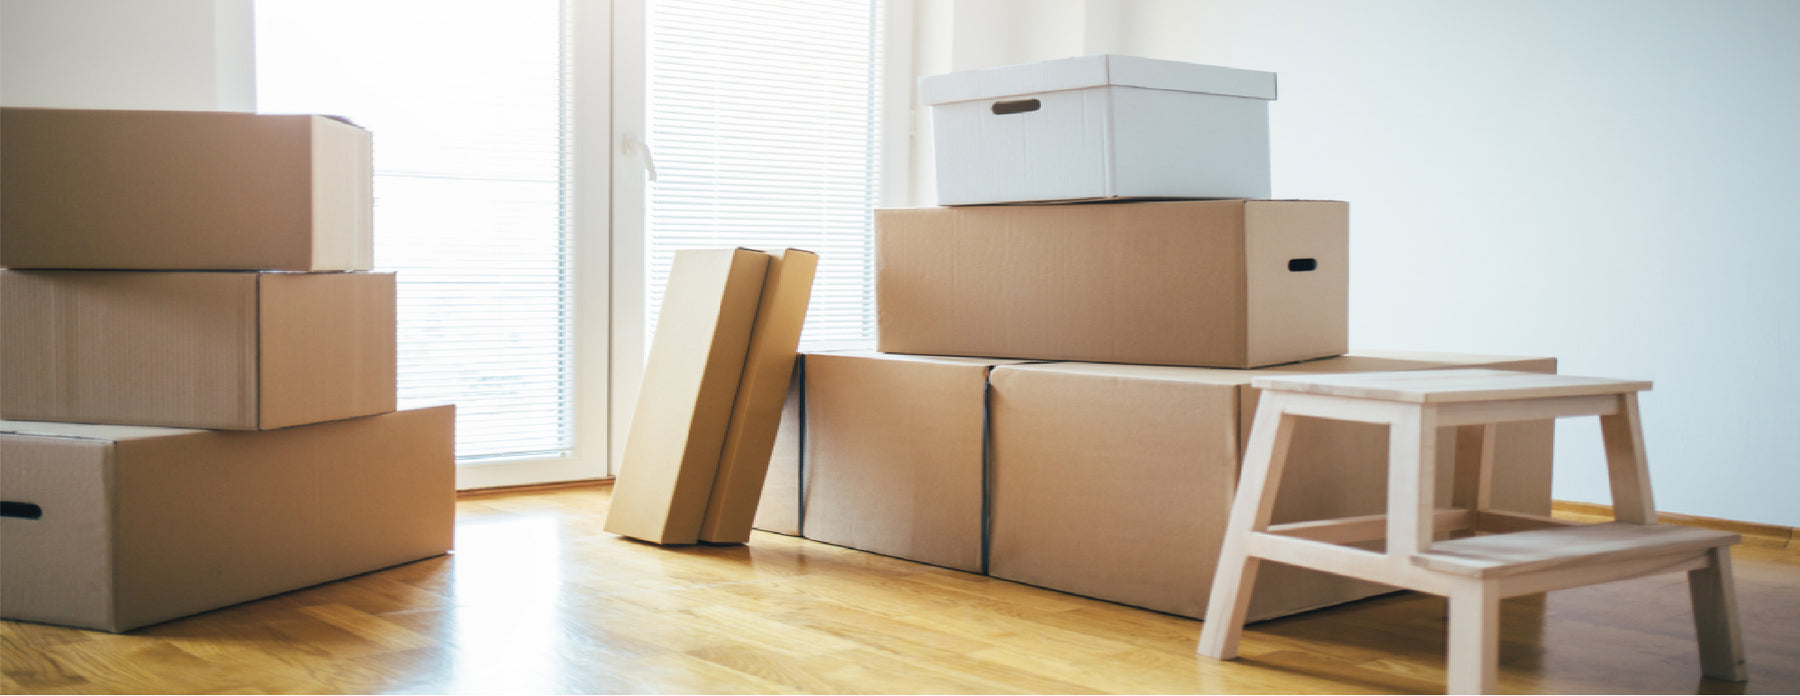 Packman: Carton Box Moving